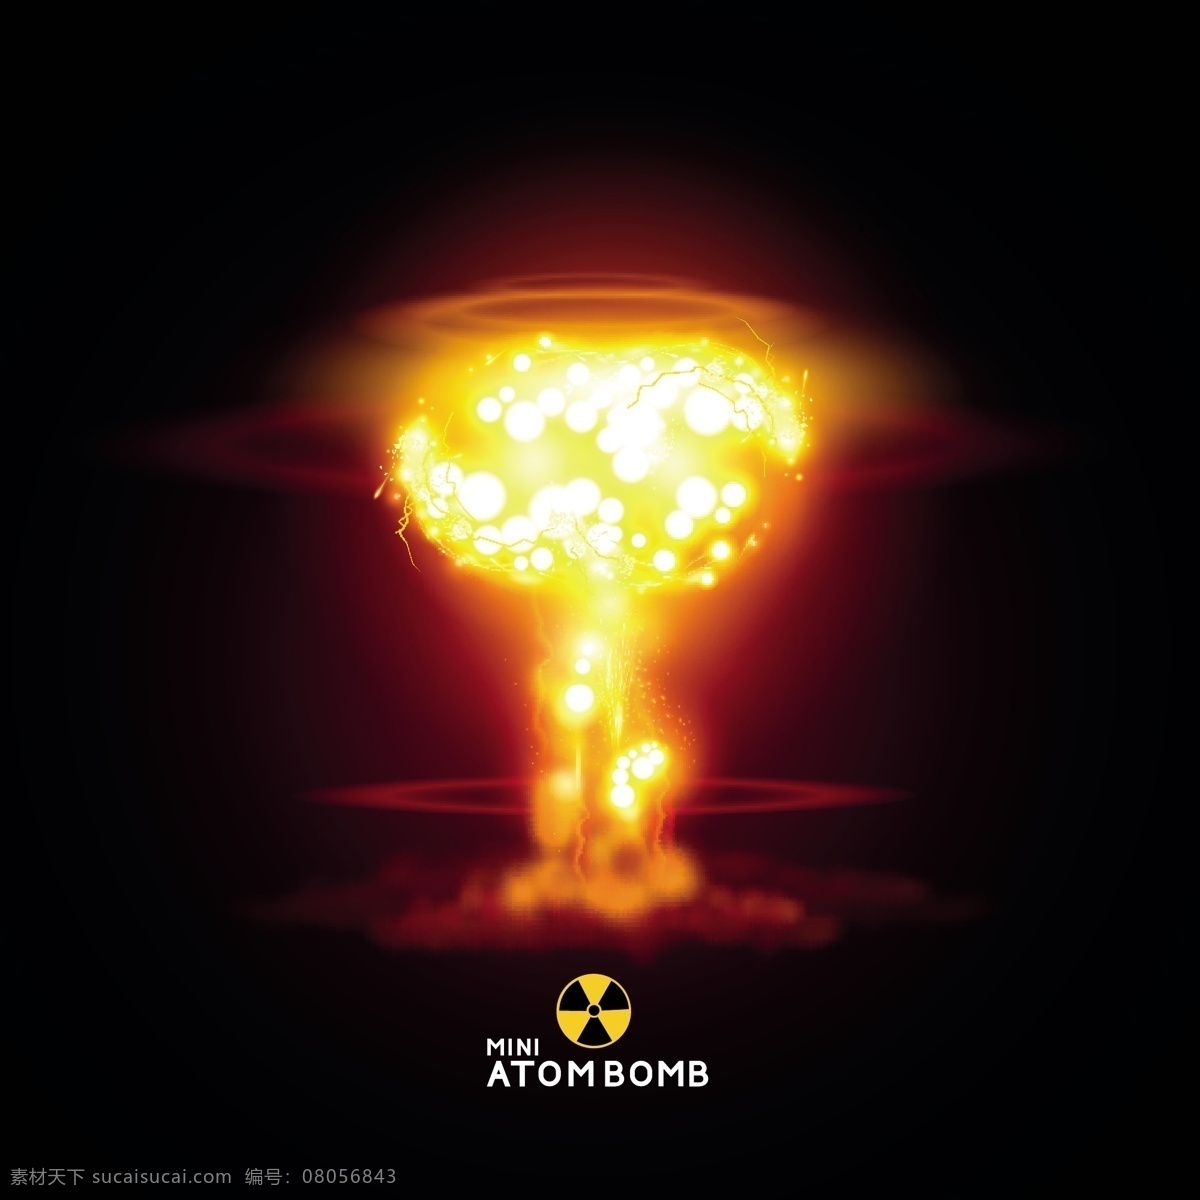 原子 核武器 爆炸 矢量 eps格式 火焰 世界末日 战争 毁灭性打击 原子弹爆炸 冲击波 矢量图